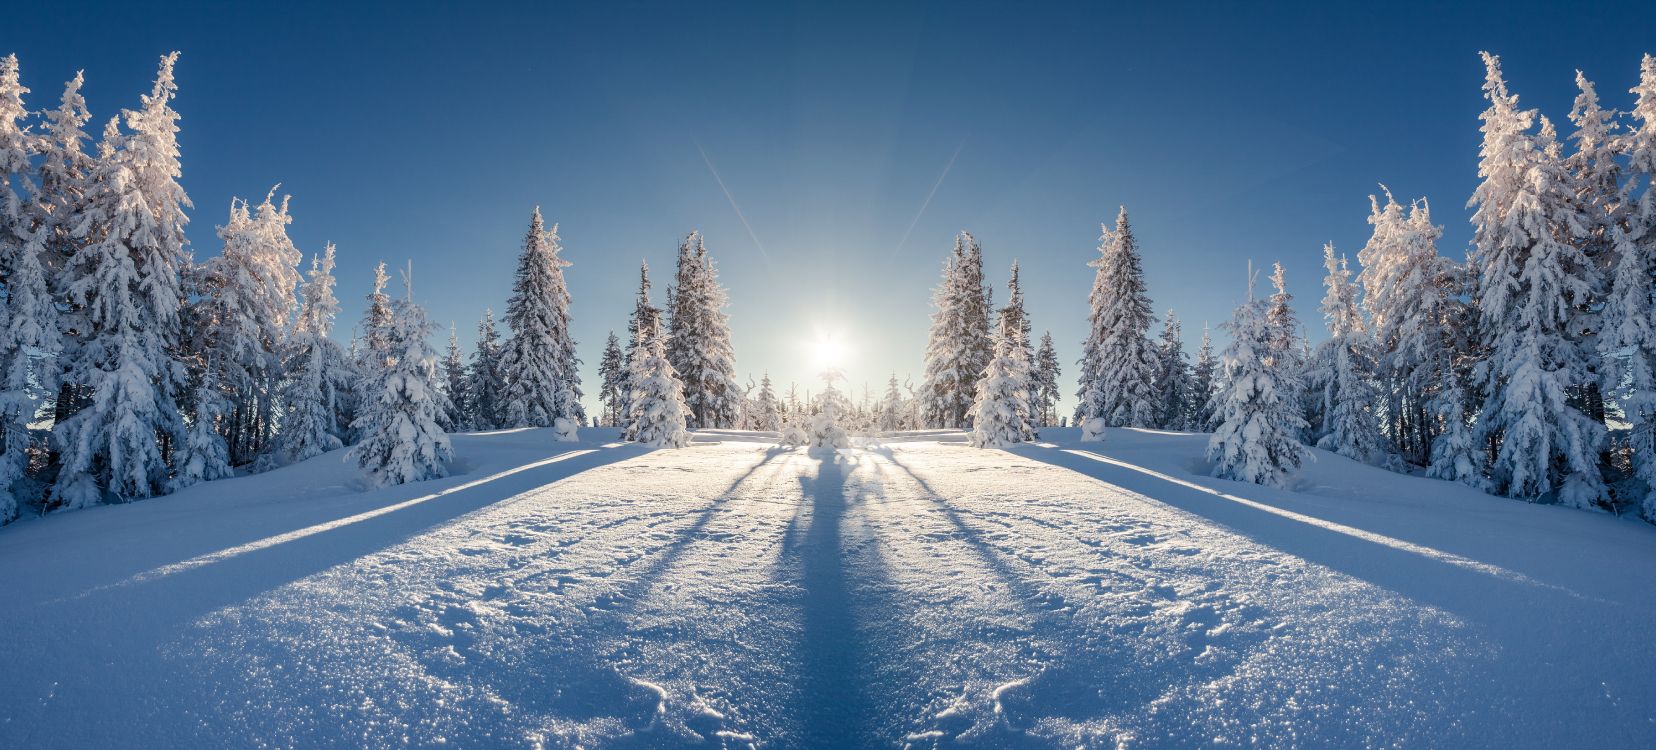 Schneebedeckte Bäume Unter Blauem Himmel Tagsüber. Wallpaper in 6946x3145 Resolution